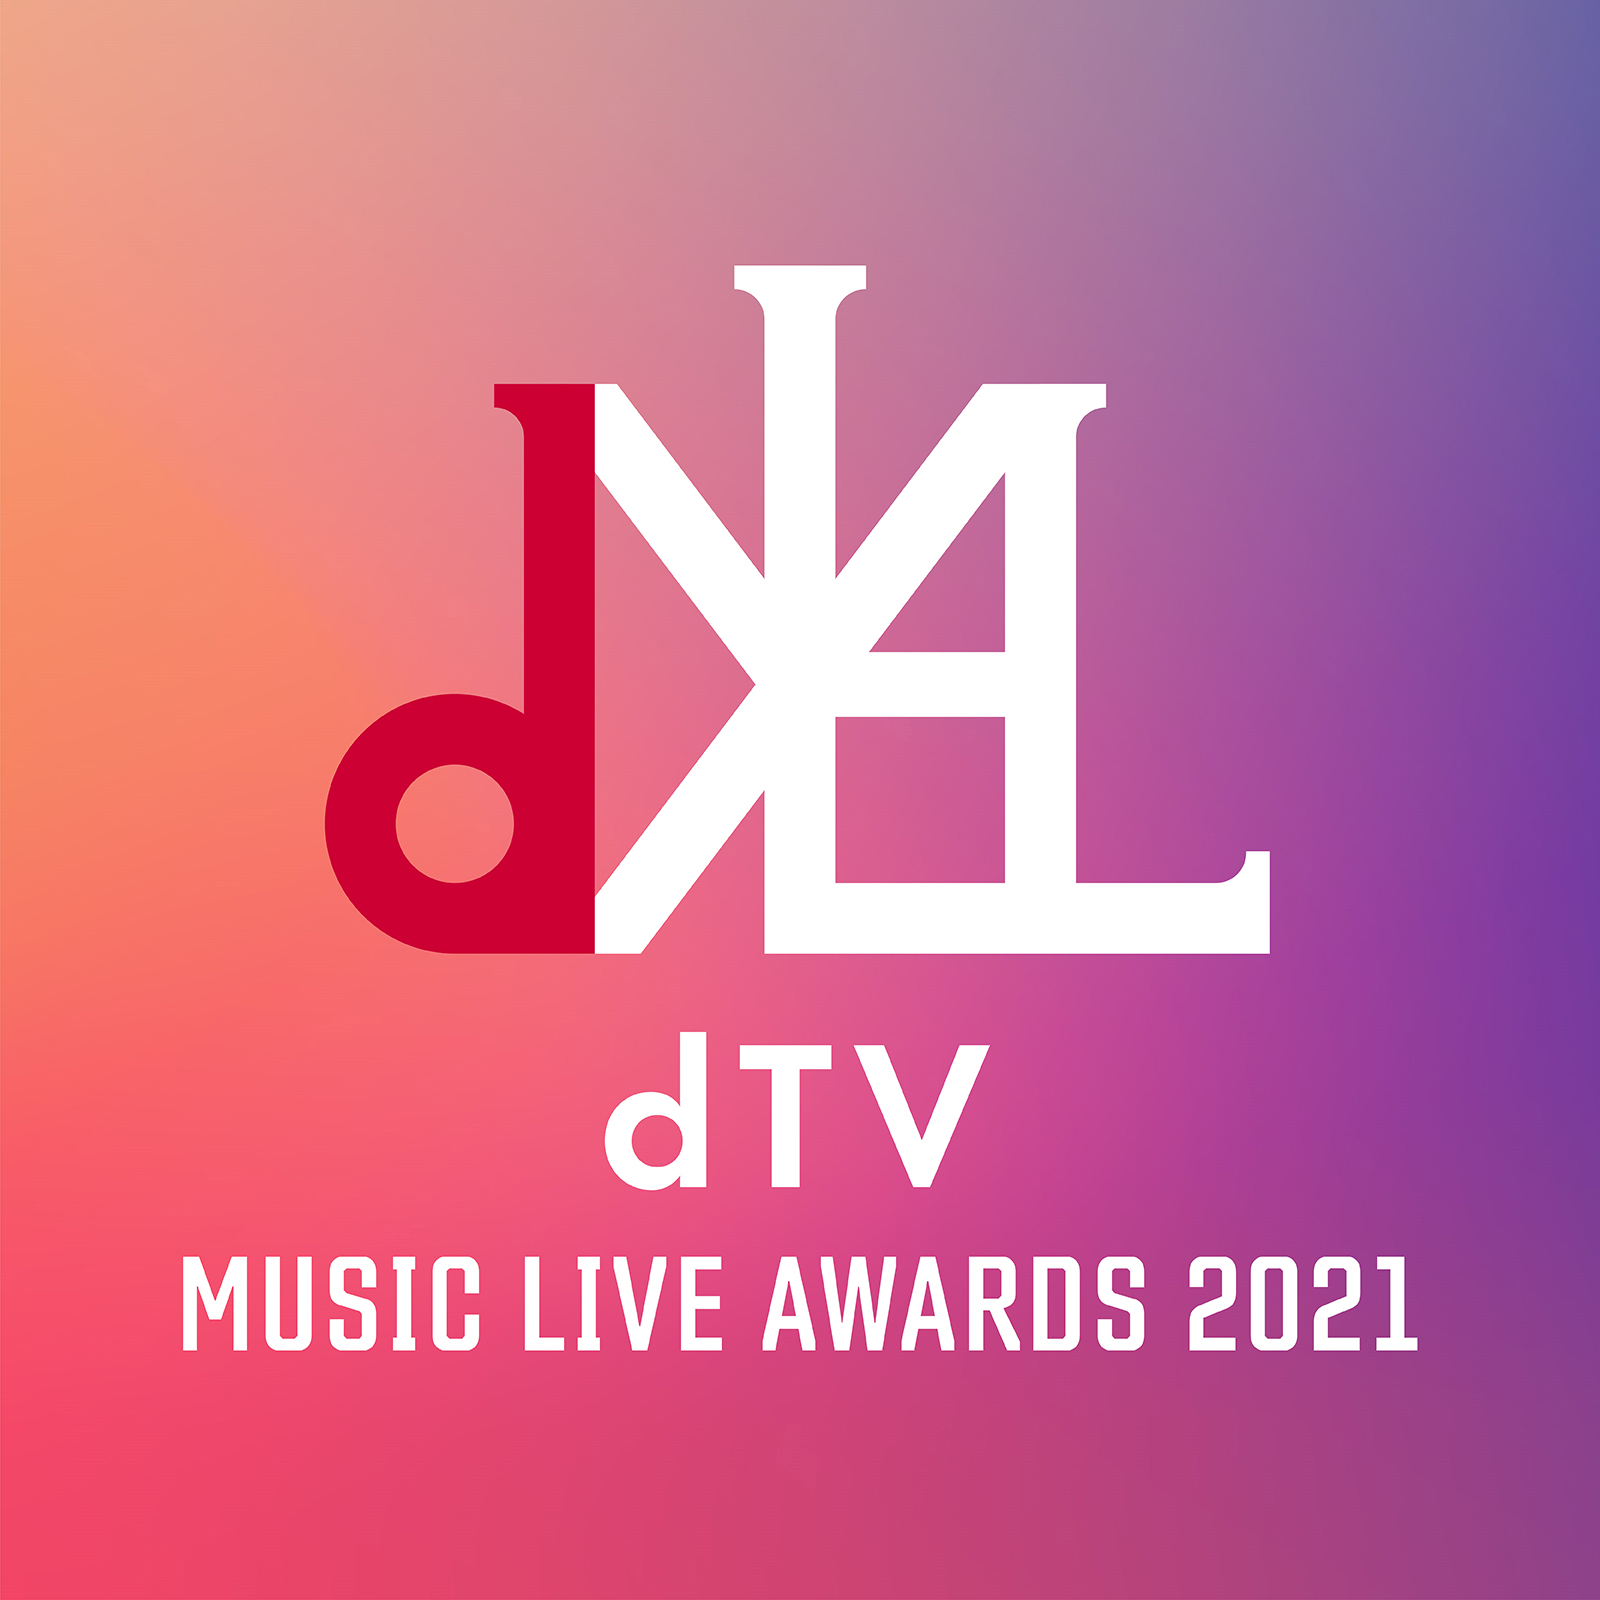 dTV MUSIC LIVE AWARDS 2021 LOGO